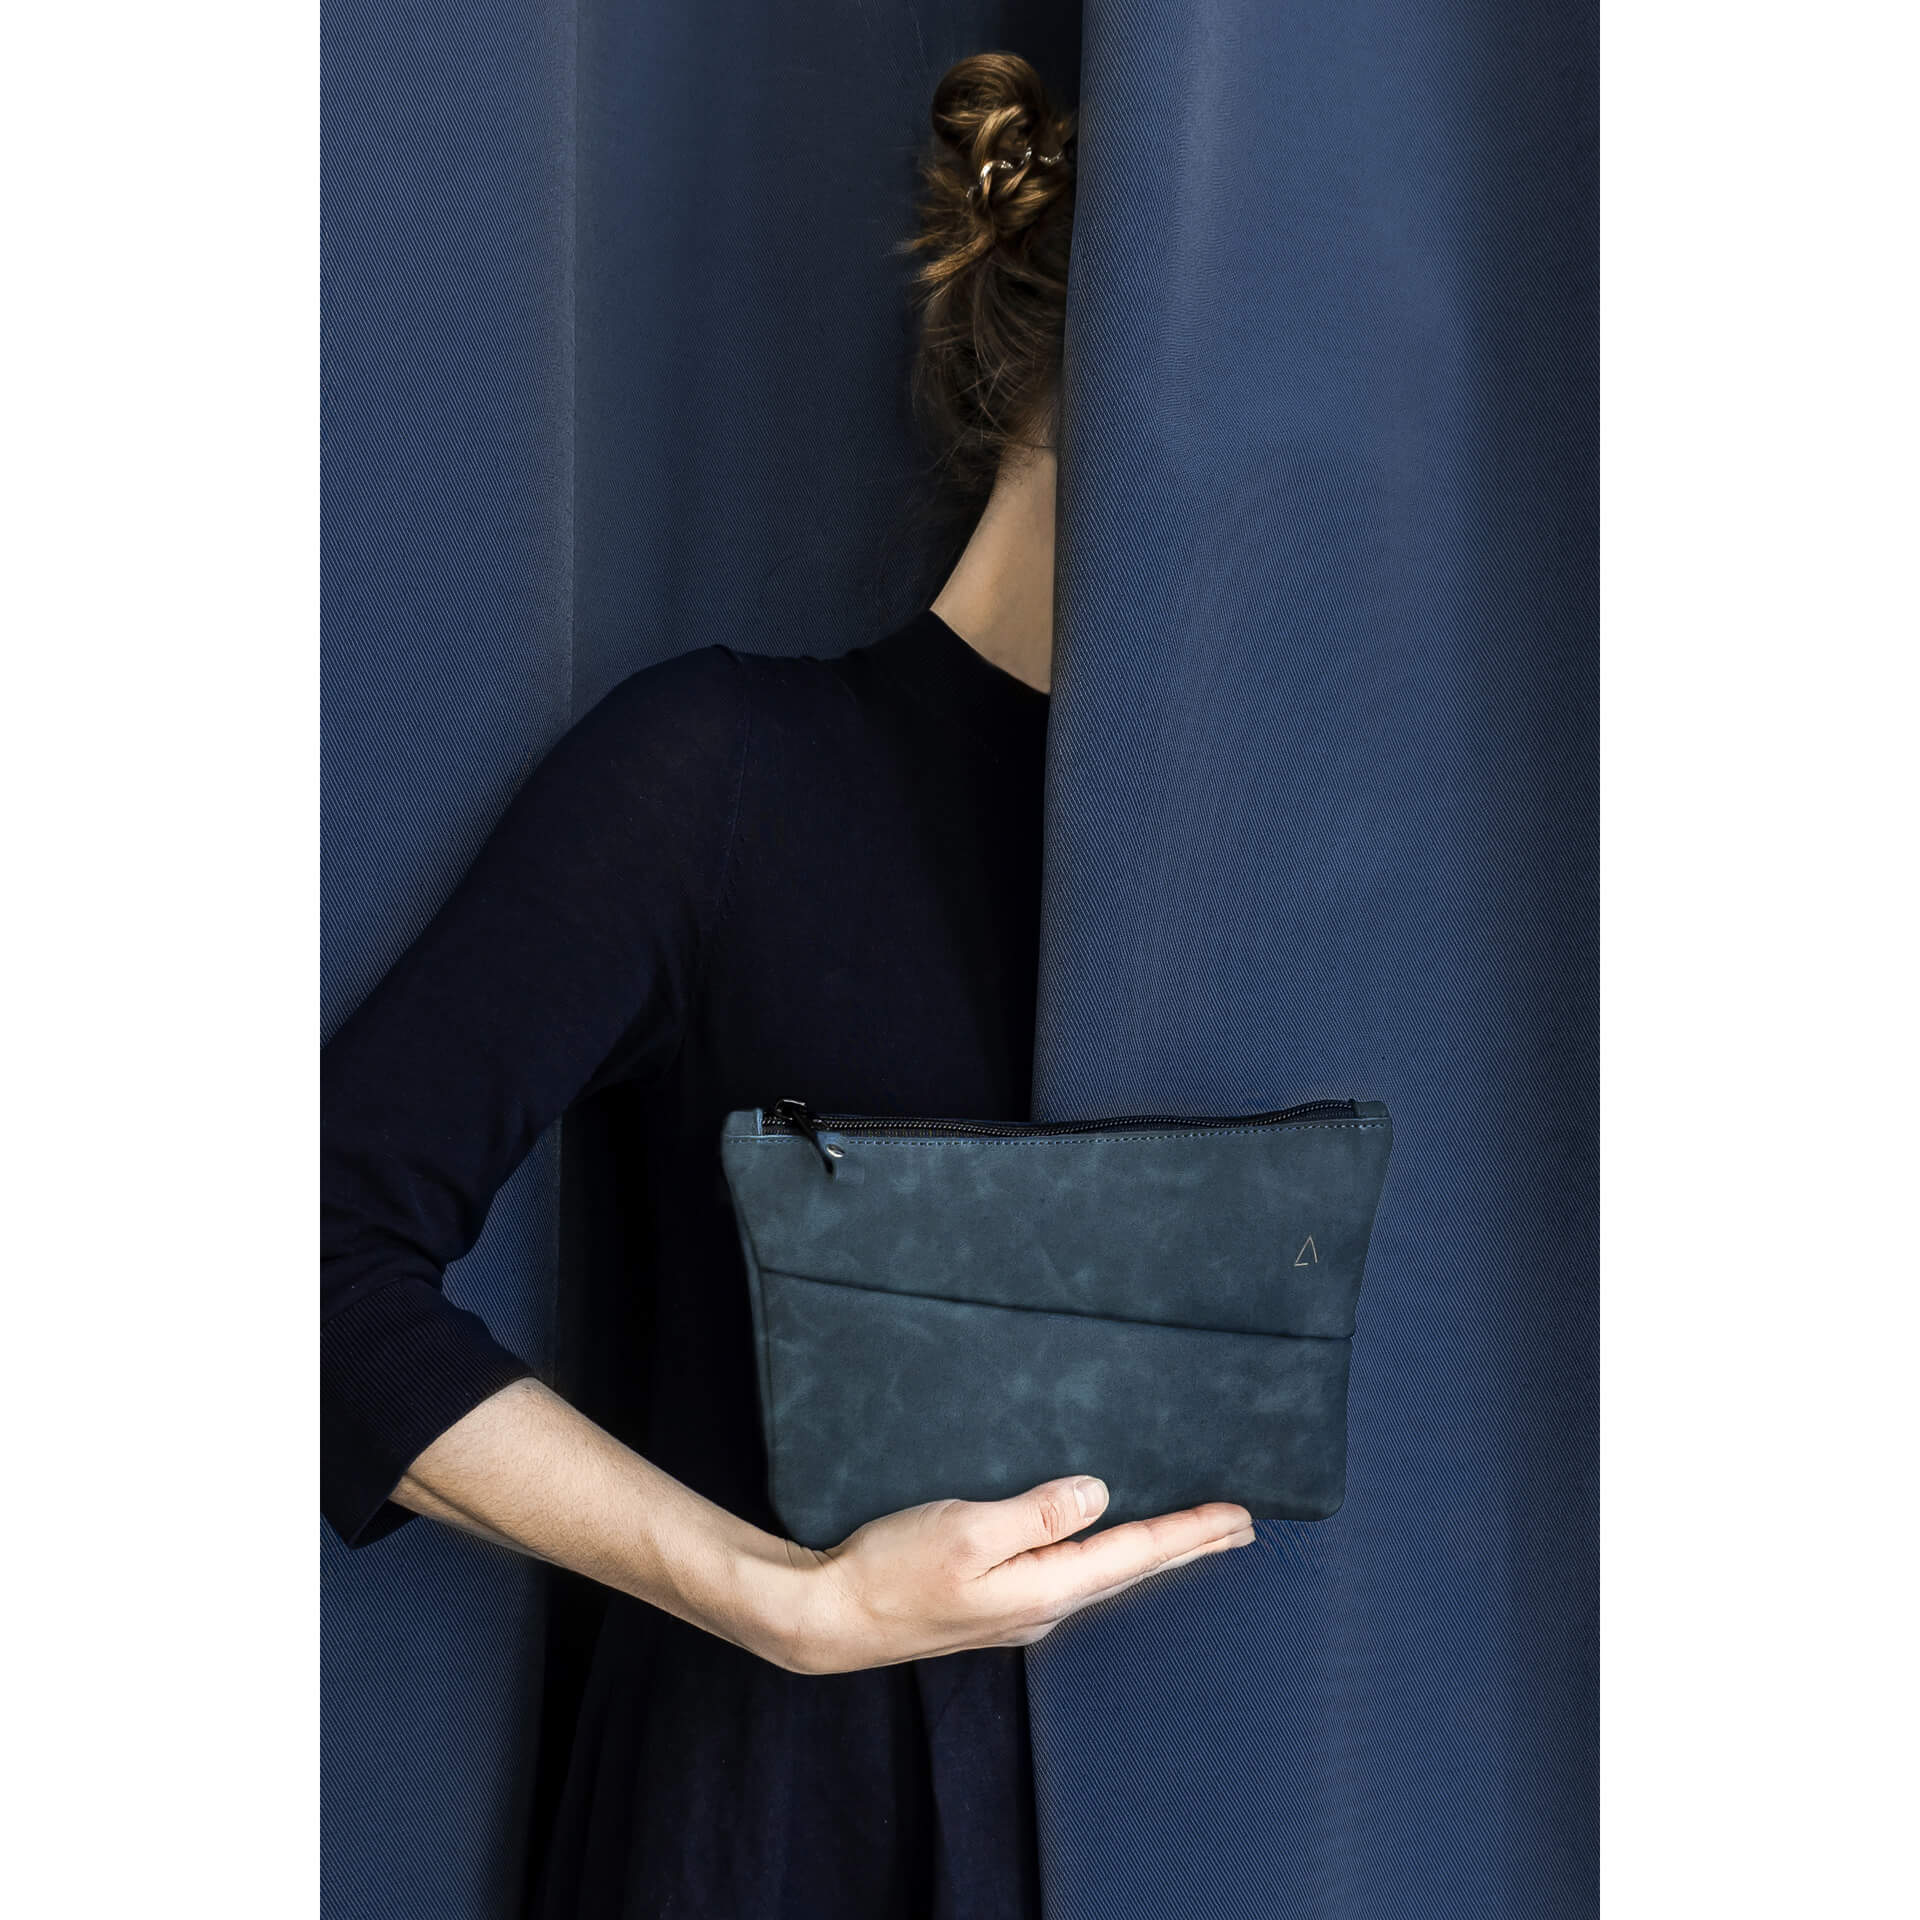 Utensilientasche Pouch FRA aus nachhaltigem Naturleder in Dunkelblau mit Logoprägung vor dunkelblauem Vorhang gehalten